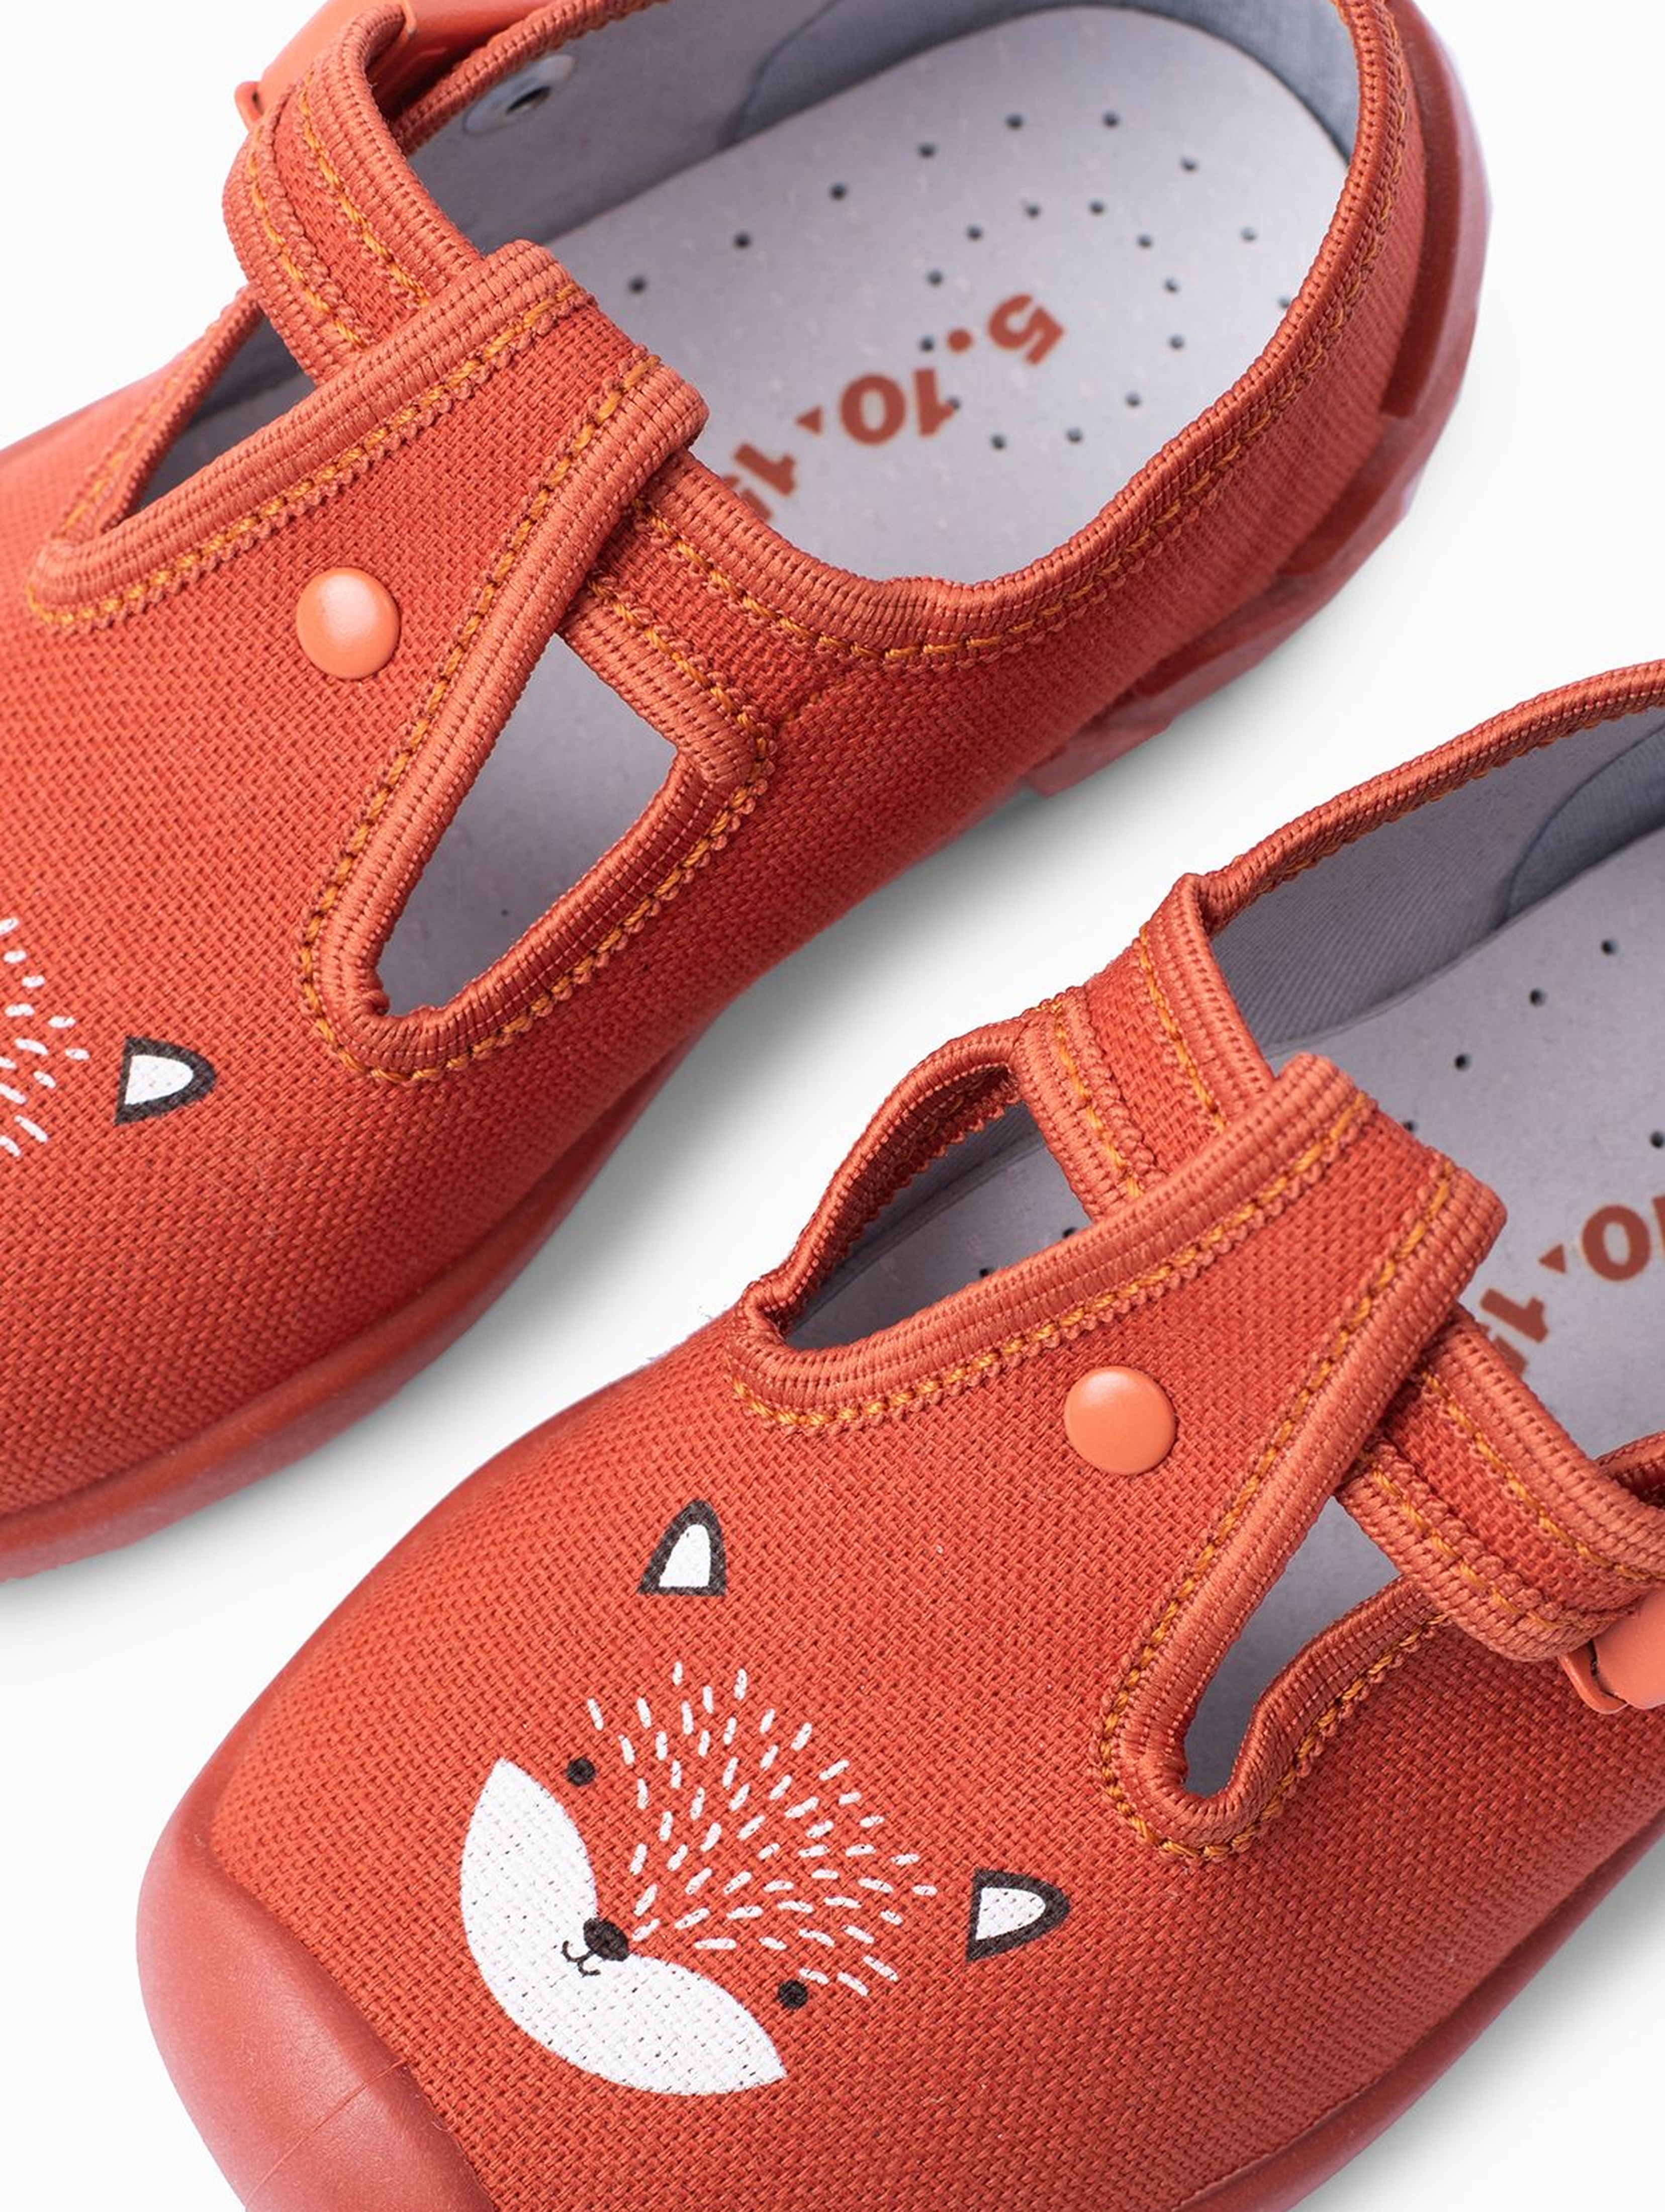 Buty dla dziecka - pomarańczowe z liskiem